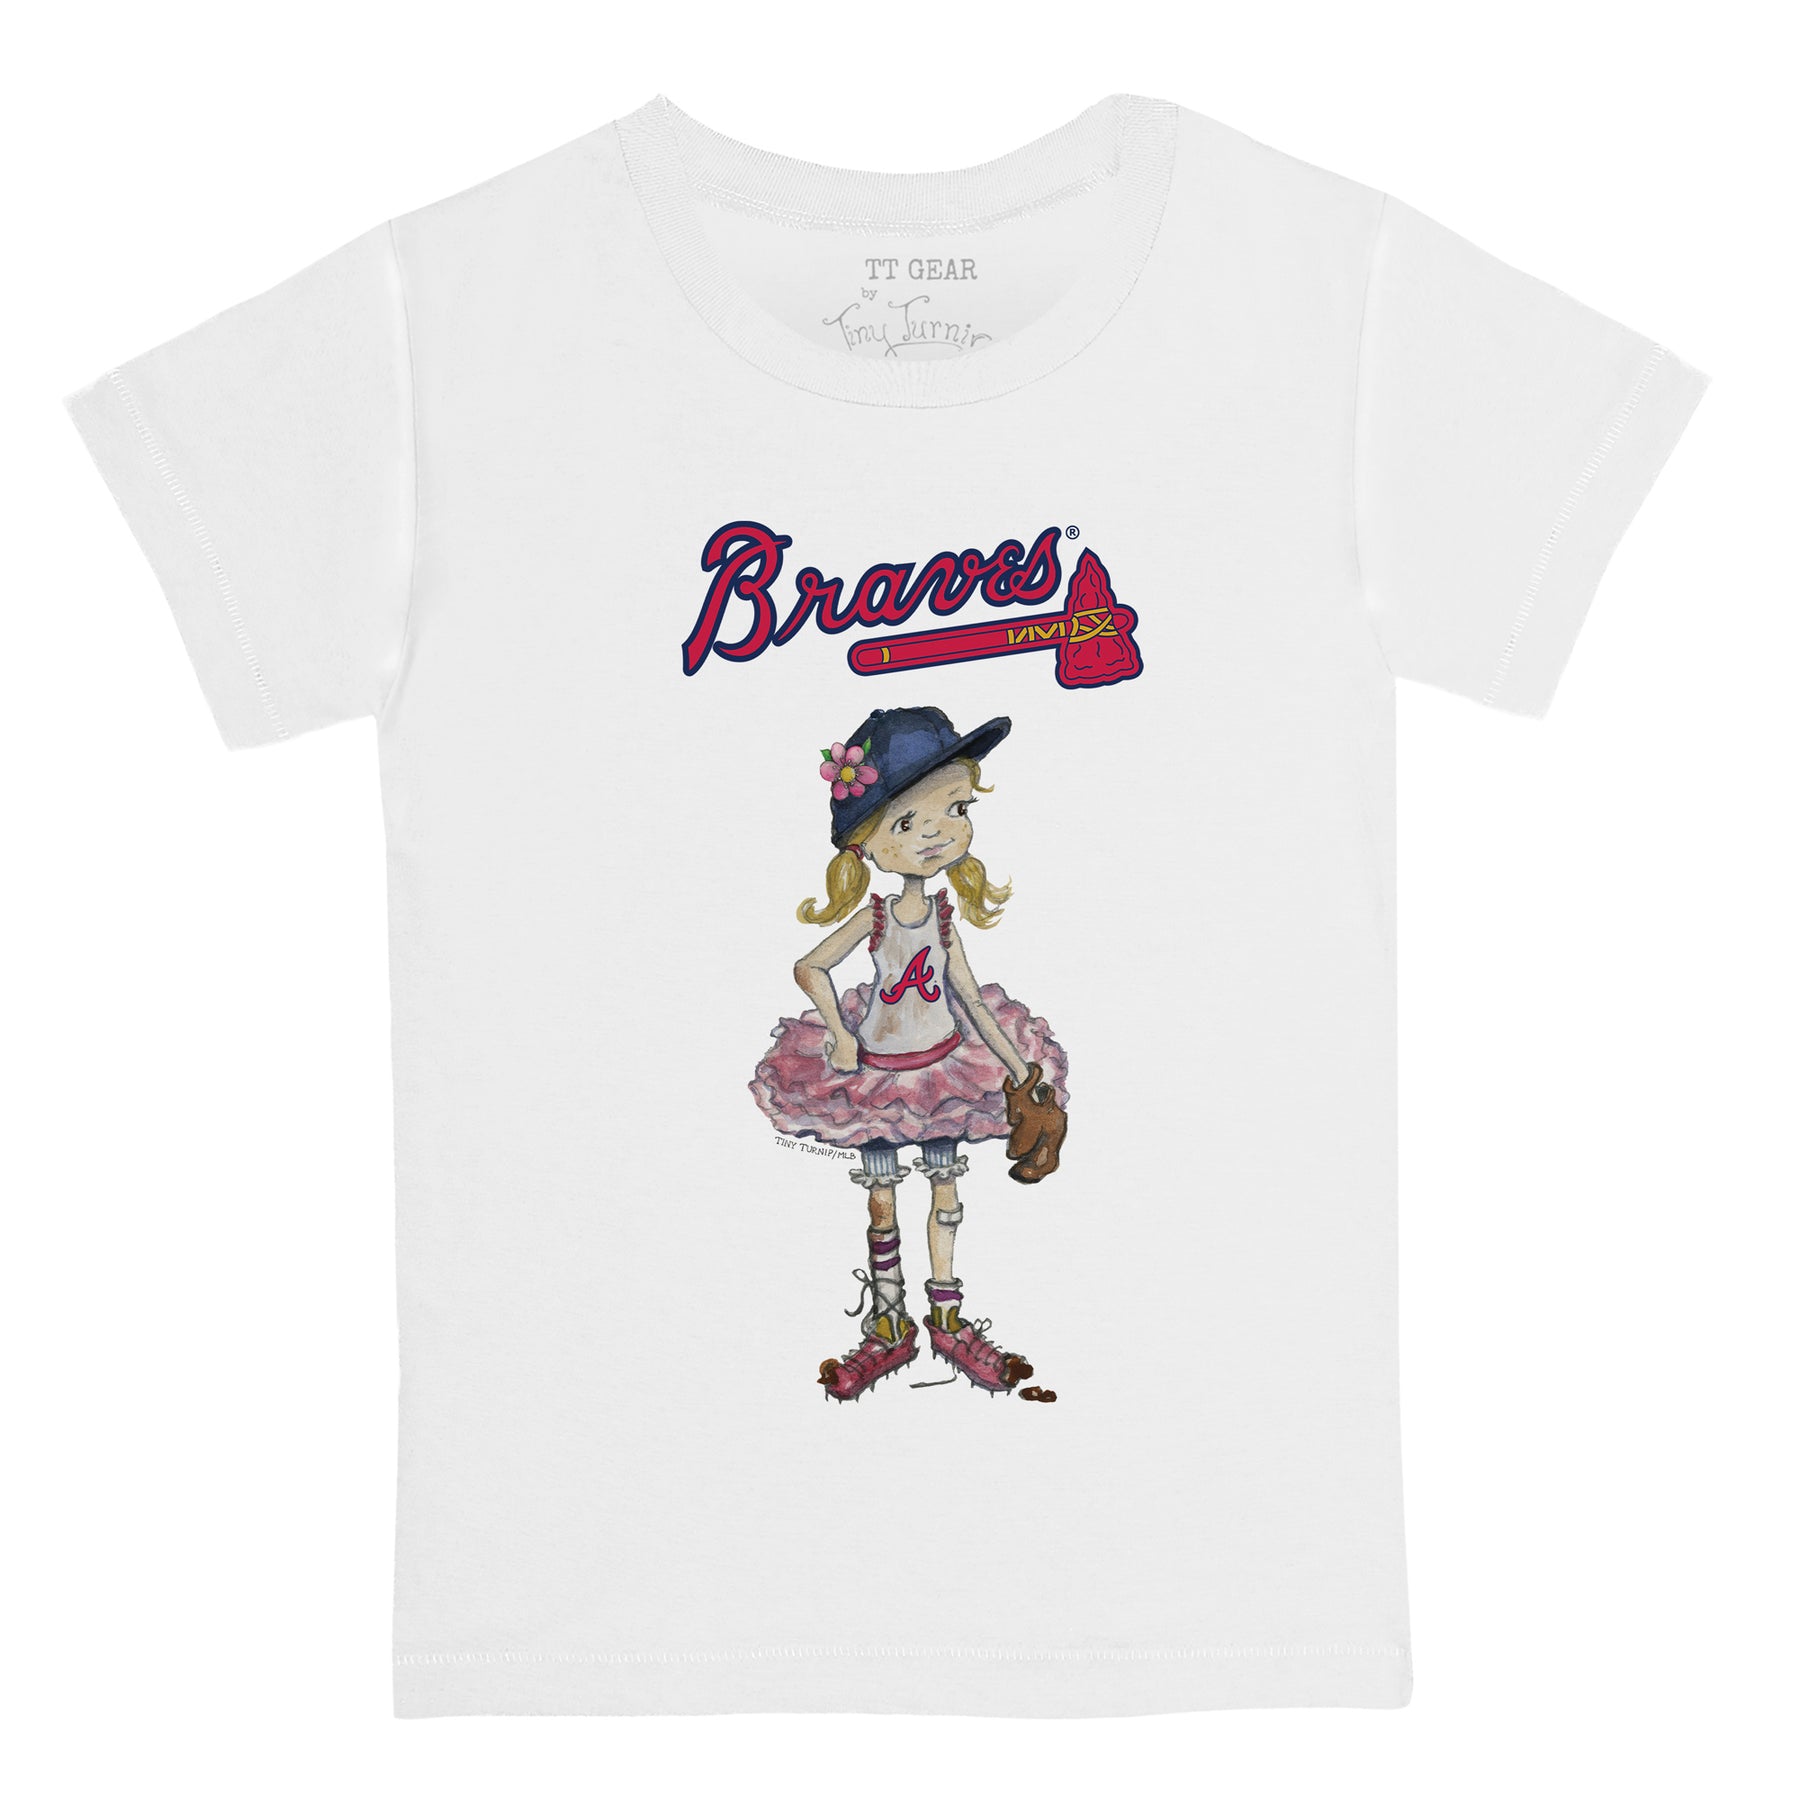 Youth Tiny Turnip White Atlanta Braves Baseball Bow T-Shirt Size: Large